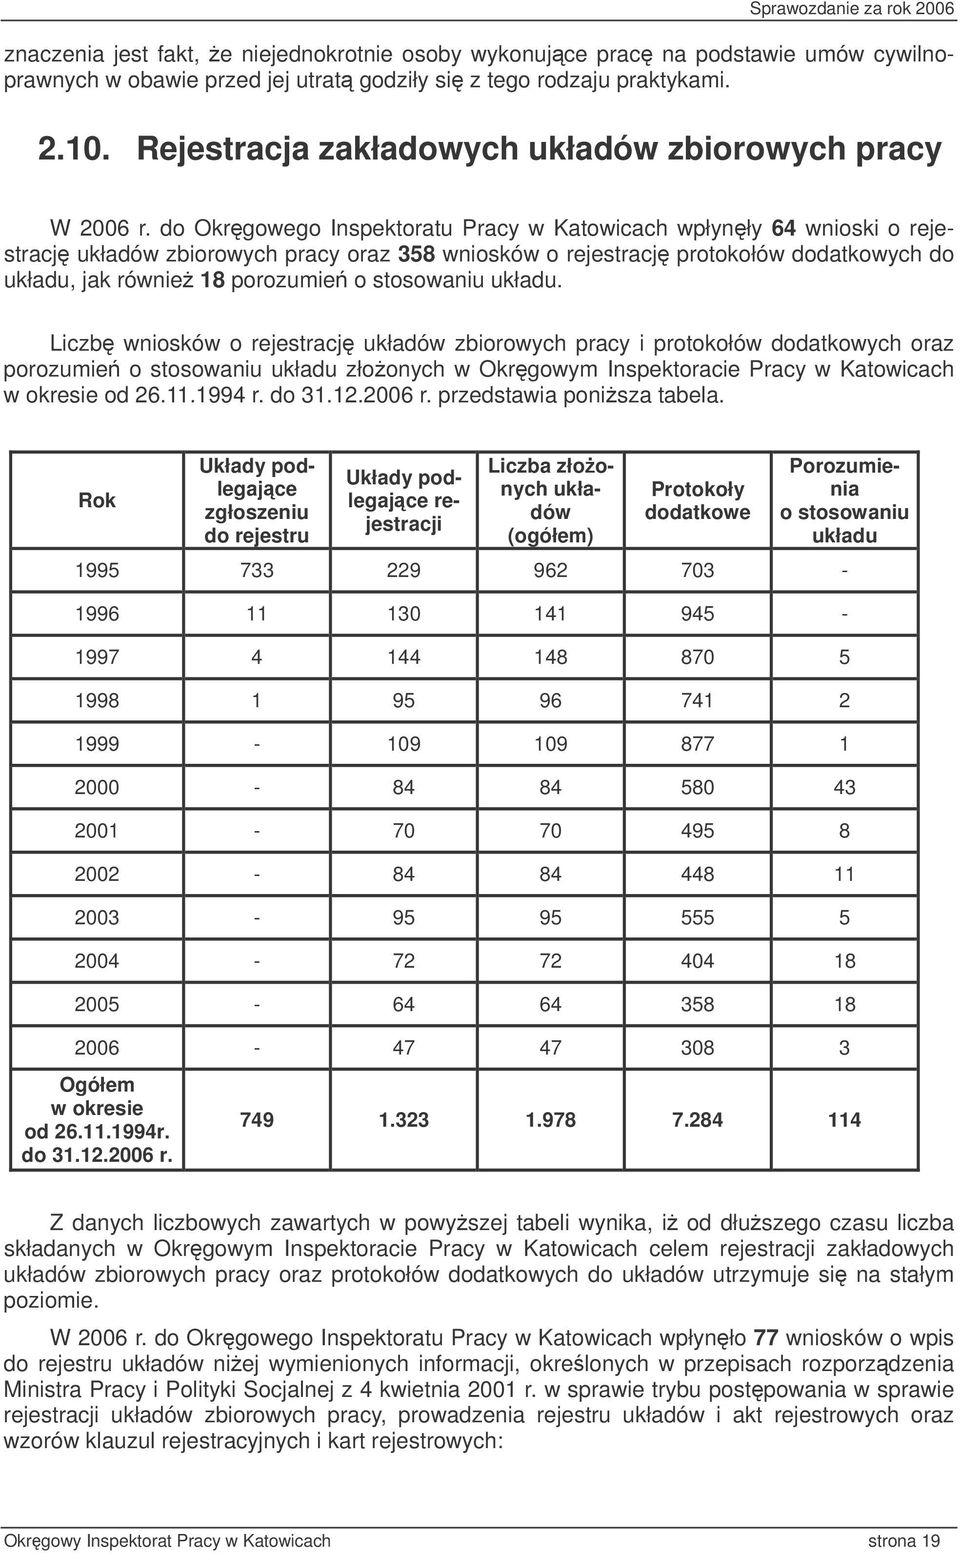 do Okrgowego Inspektoratu Pracy w Katowicach wpłynły 64 wnioski o rejestracj układów zbiorowych pracy oraz 358 wniosków o rejestracj protokołów dodatkowych do układu, jak równie 18 porozumie o